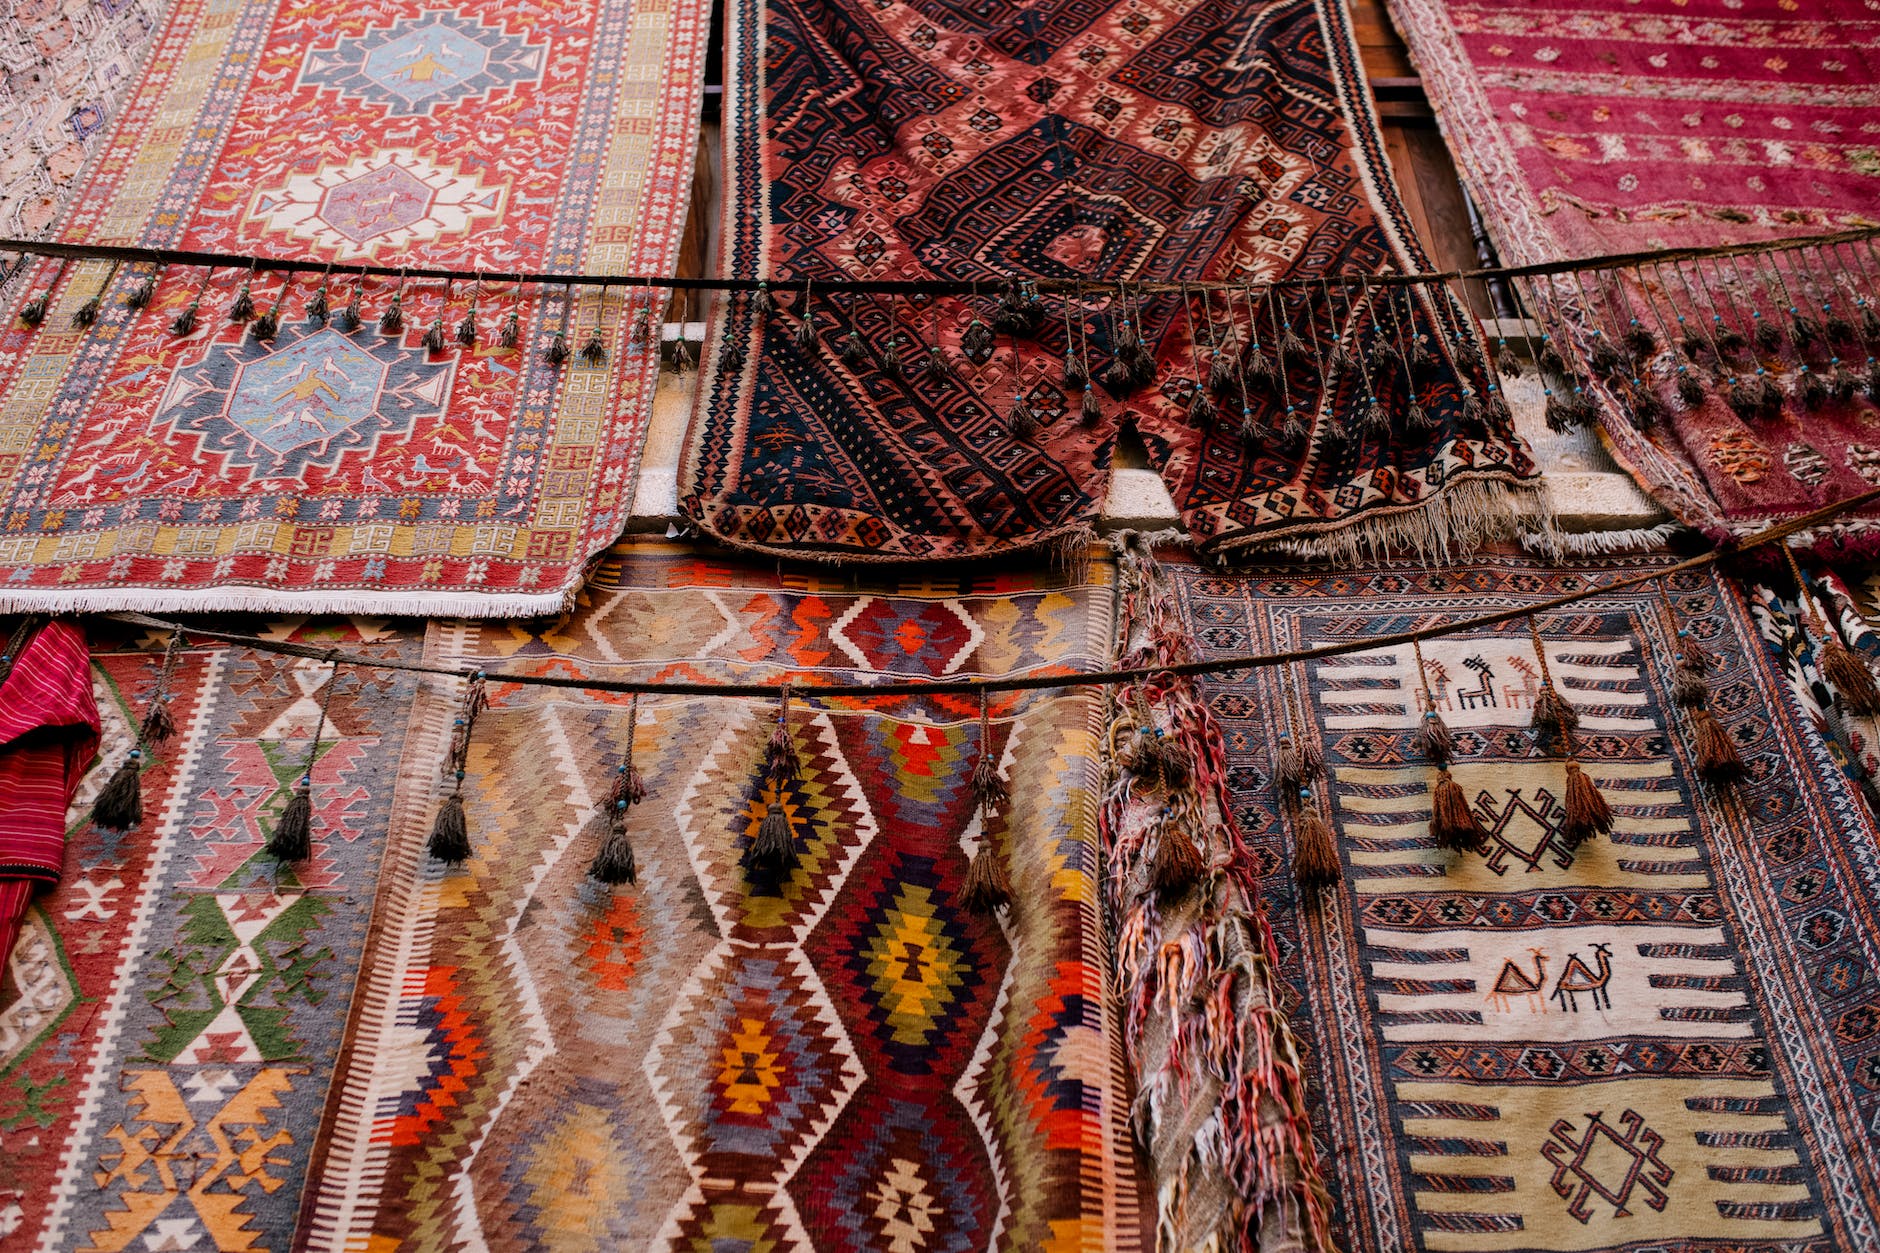 ornamental handmade rugs in open market